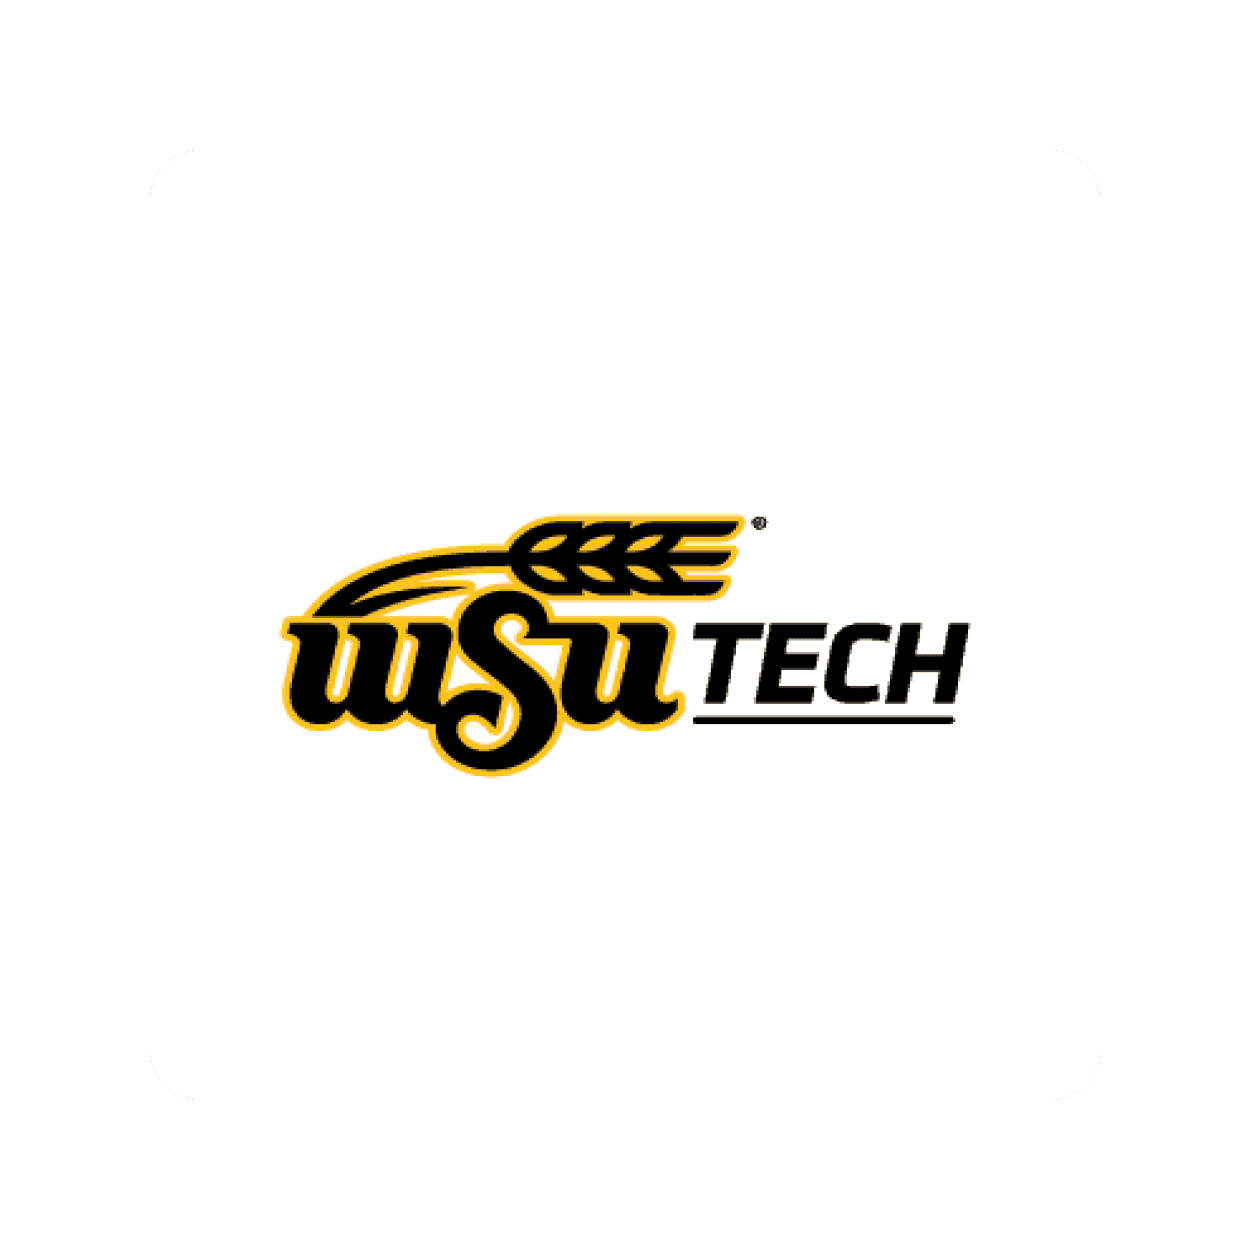 WSU Tech